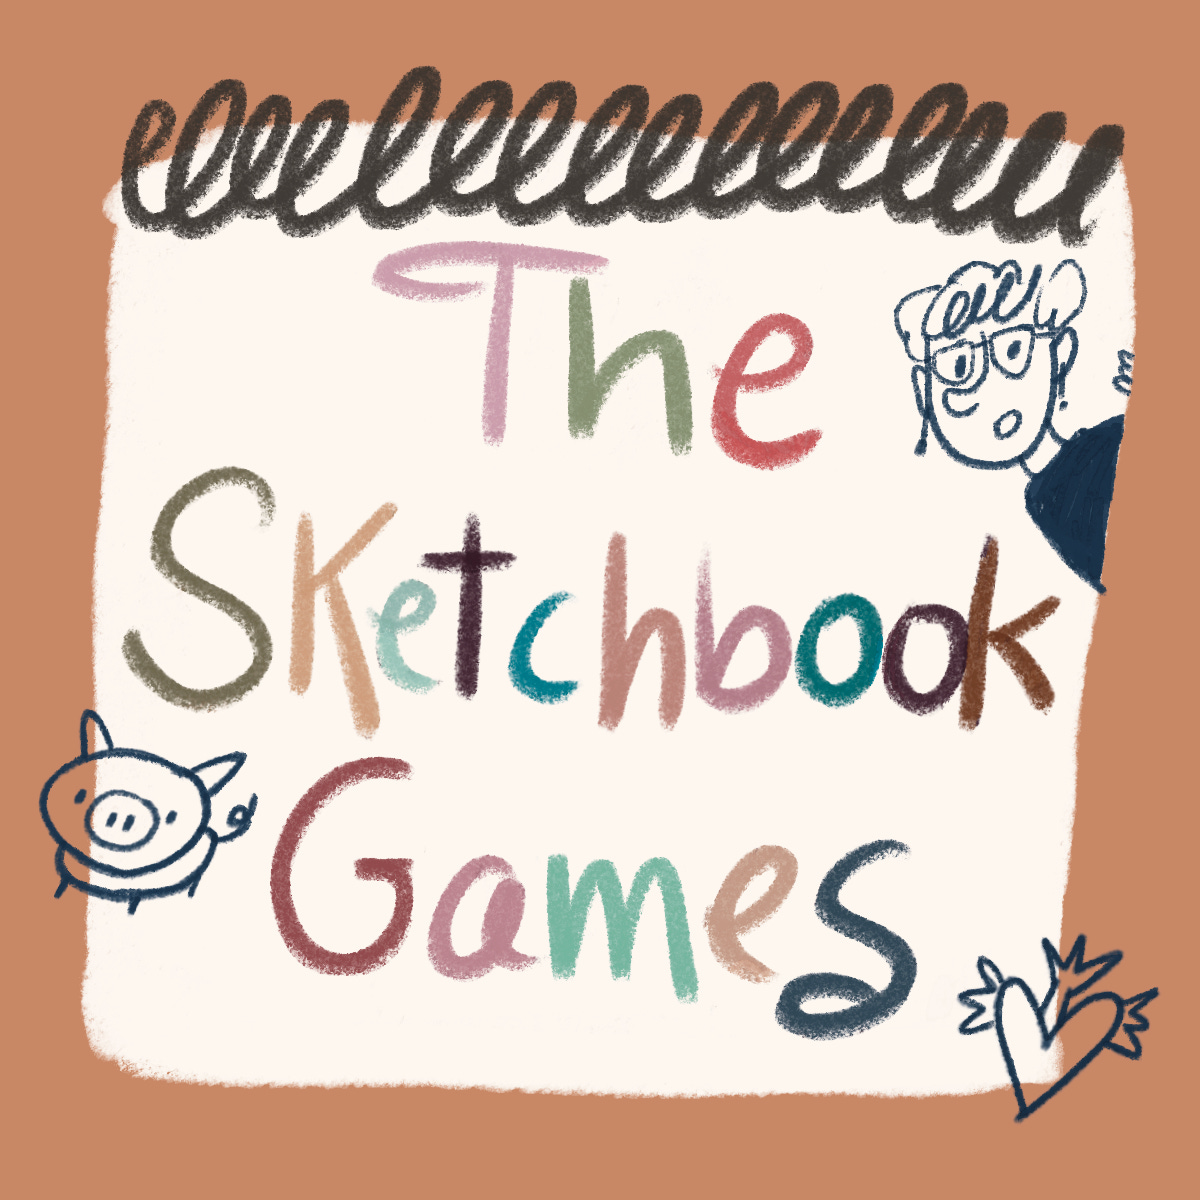 Artwork for The sketchbook games